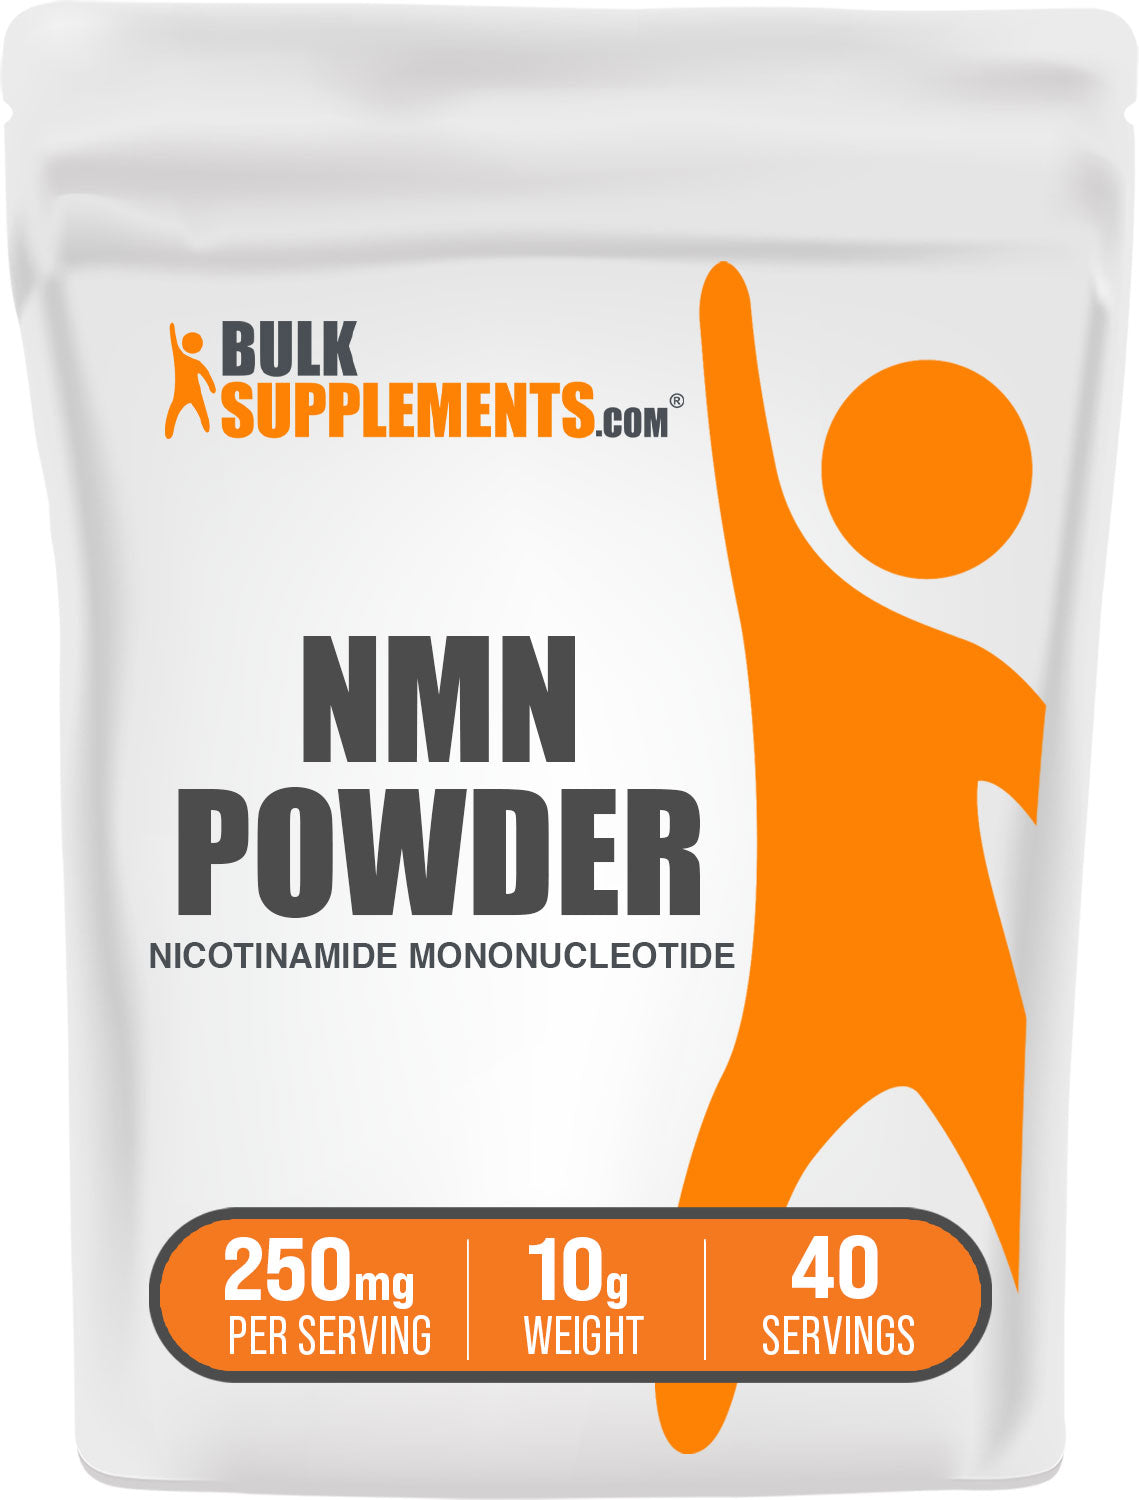 BulkSupplements NMN Powder Nicotinamide Mononucleotide 10g bag